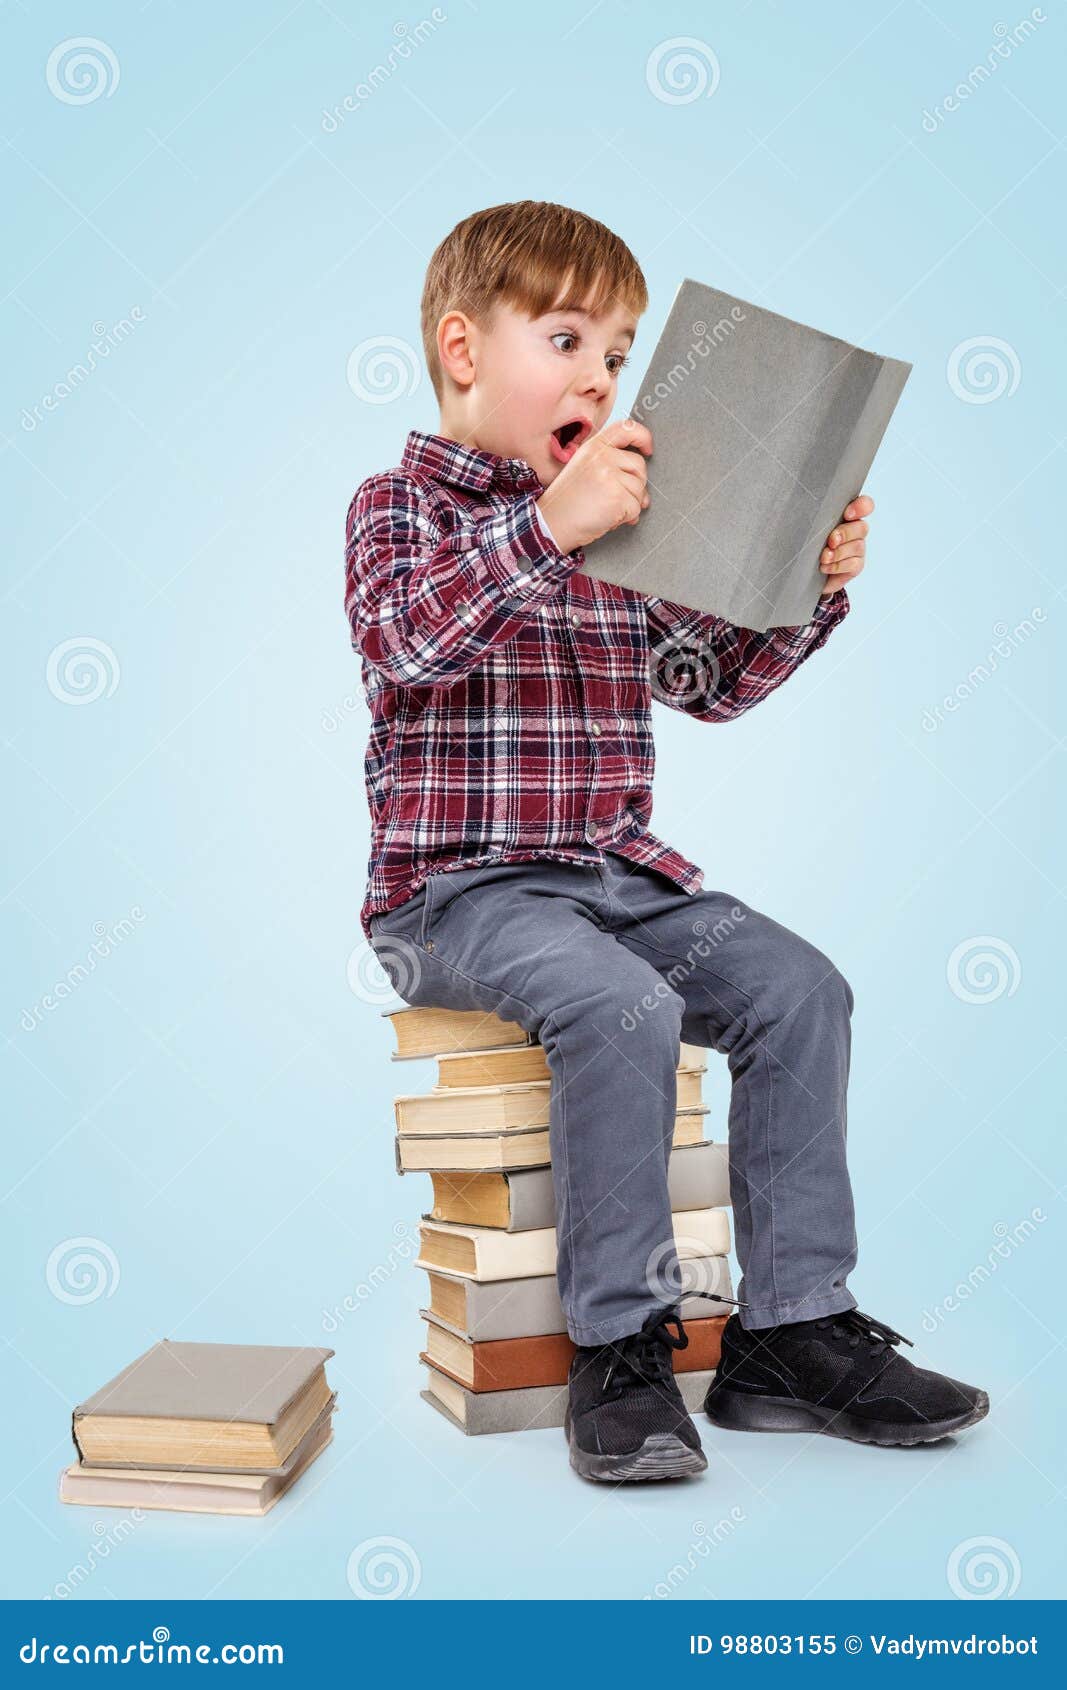 Читатель сидеть. Мальчик с книжкой. Мальчик сидит читает. Сидит с книгой. Мальчик сидит на книжках.